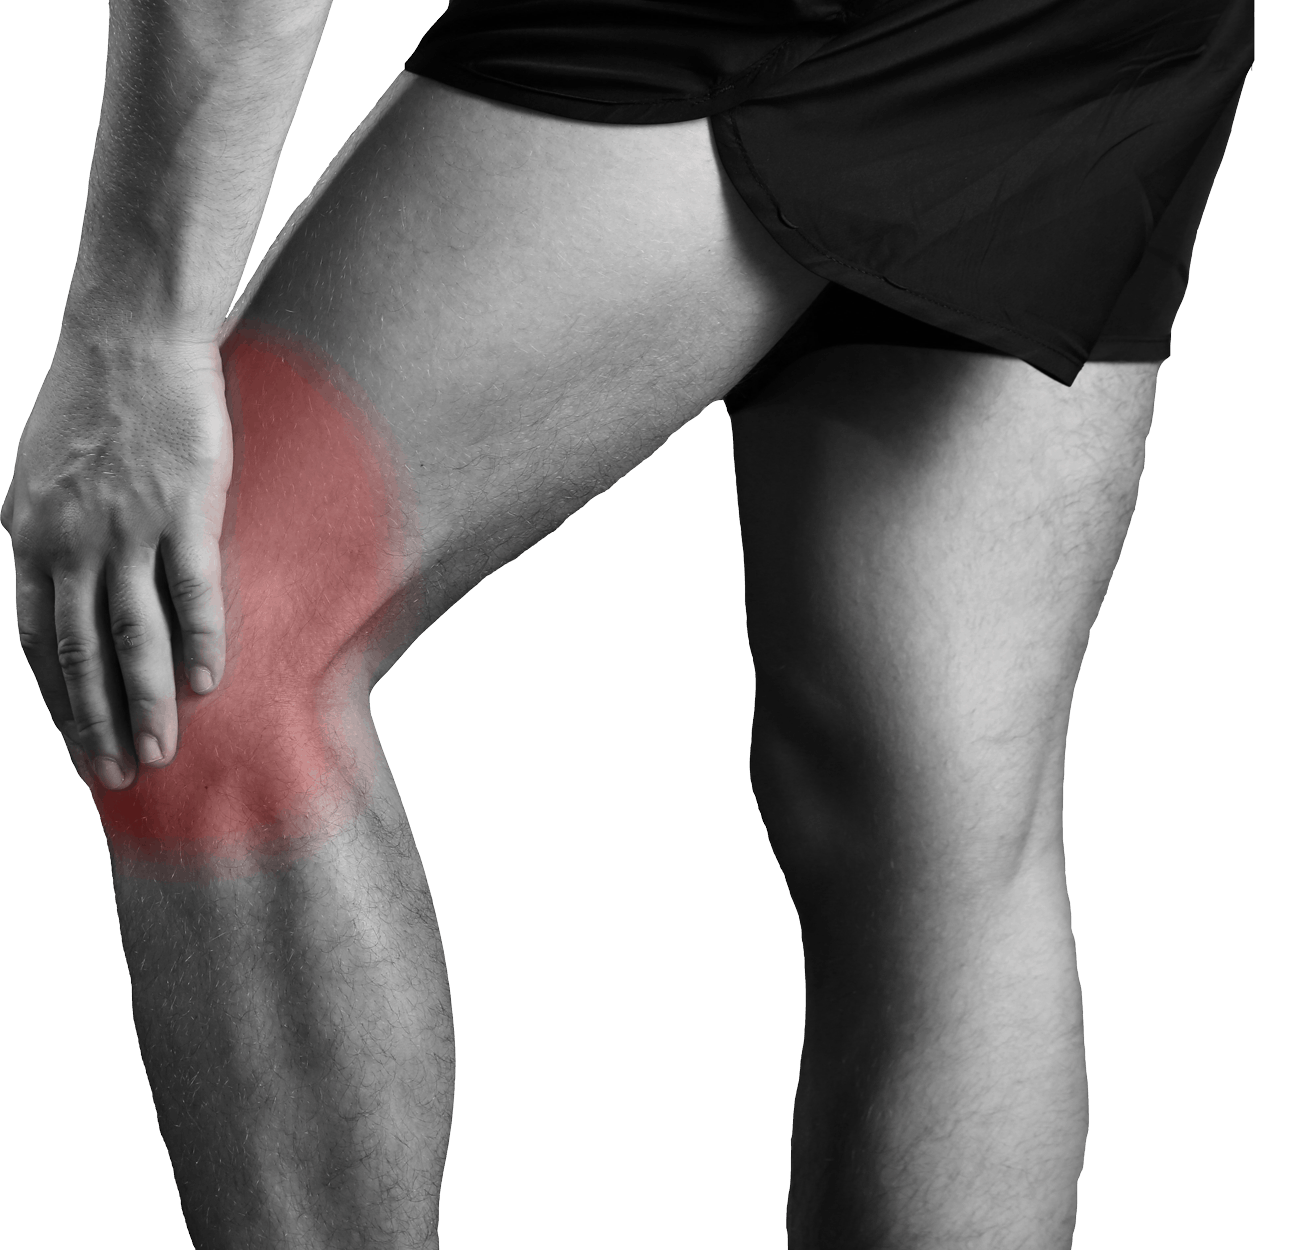 Knee Pain. Обследование колена